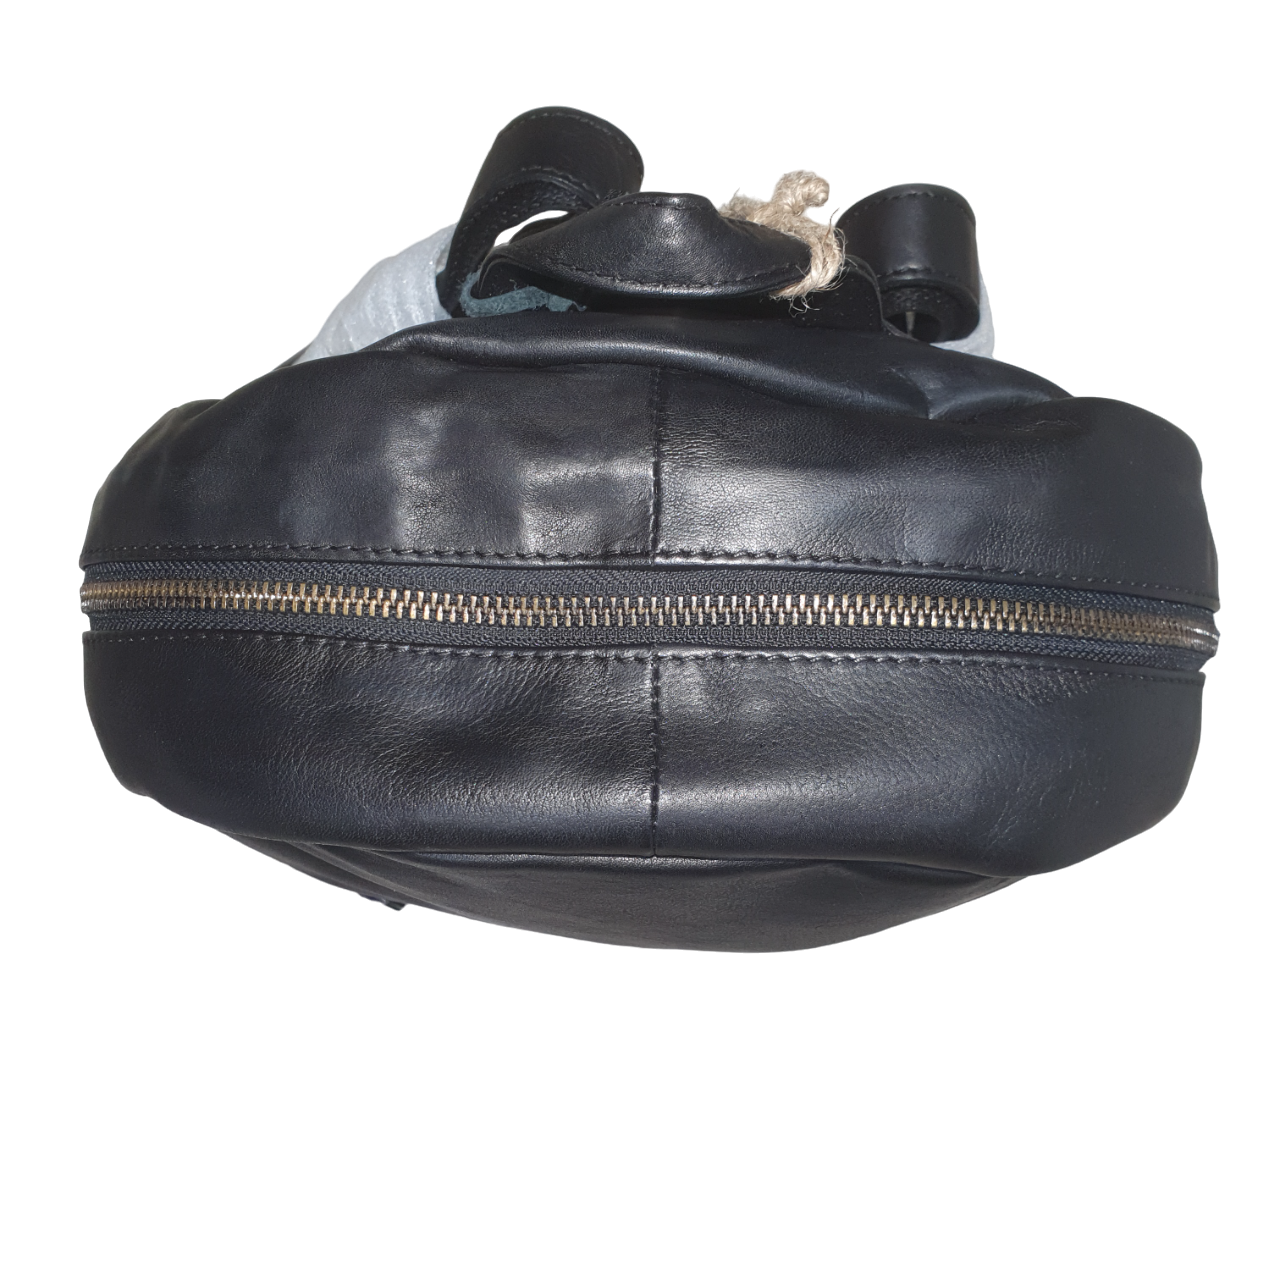 Rugged Hide - Leather Backpack RH-2625 Bern